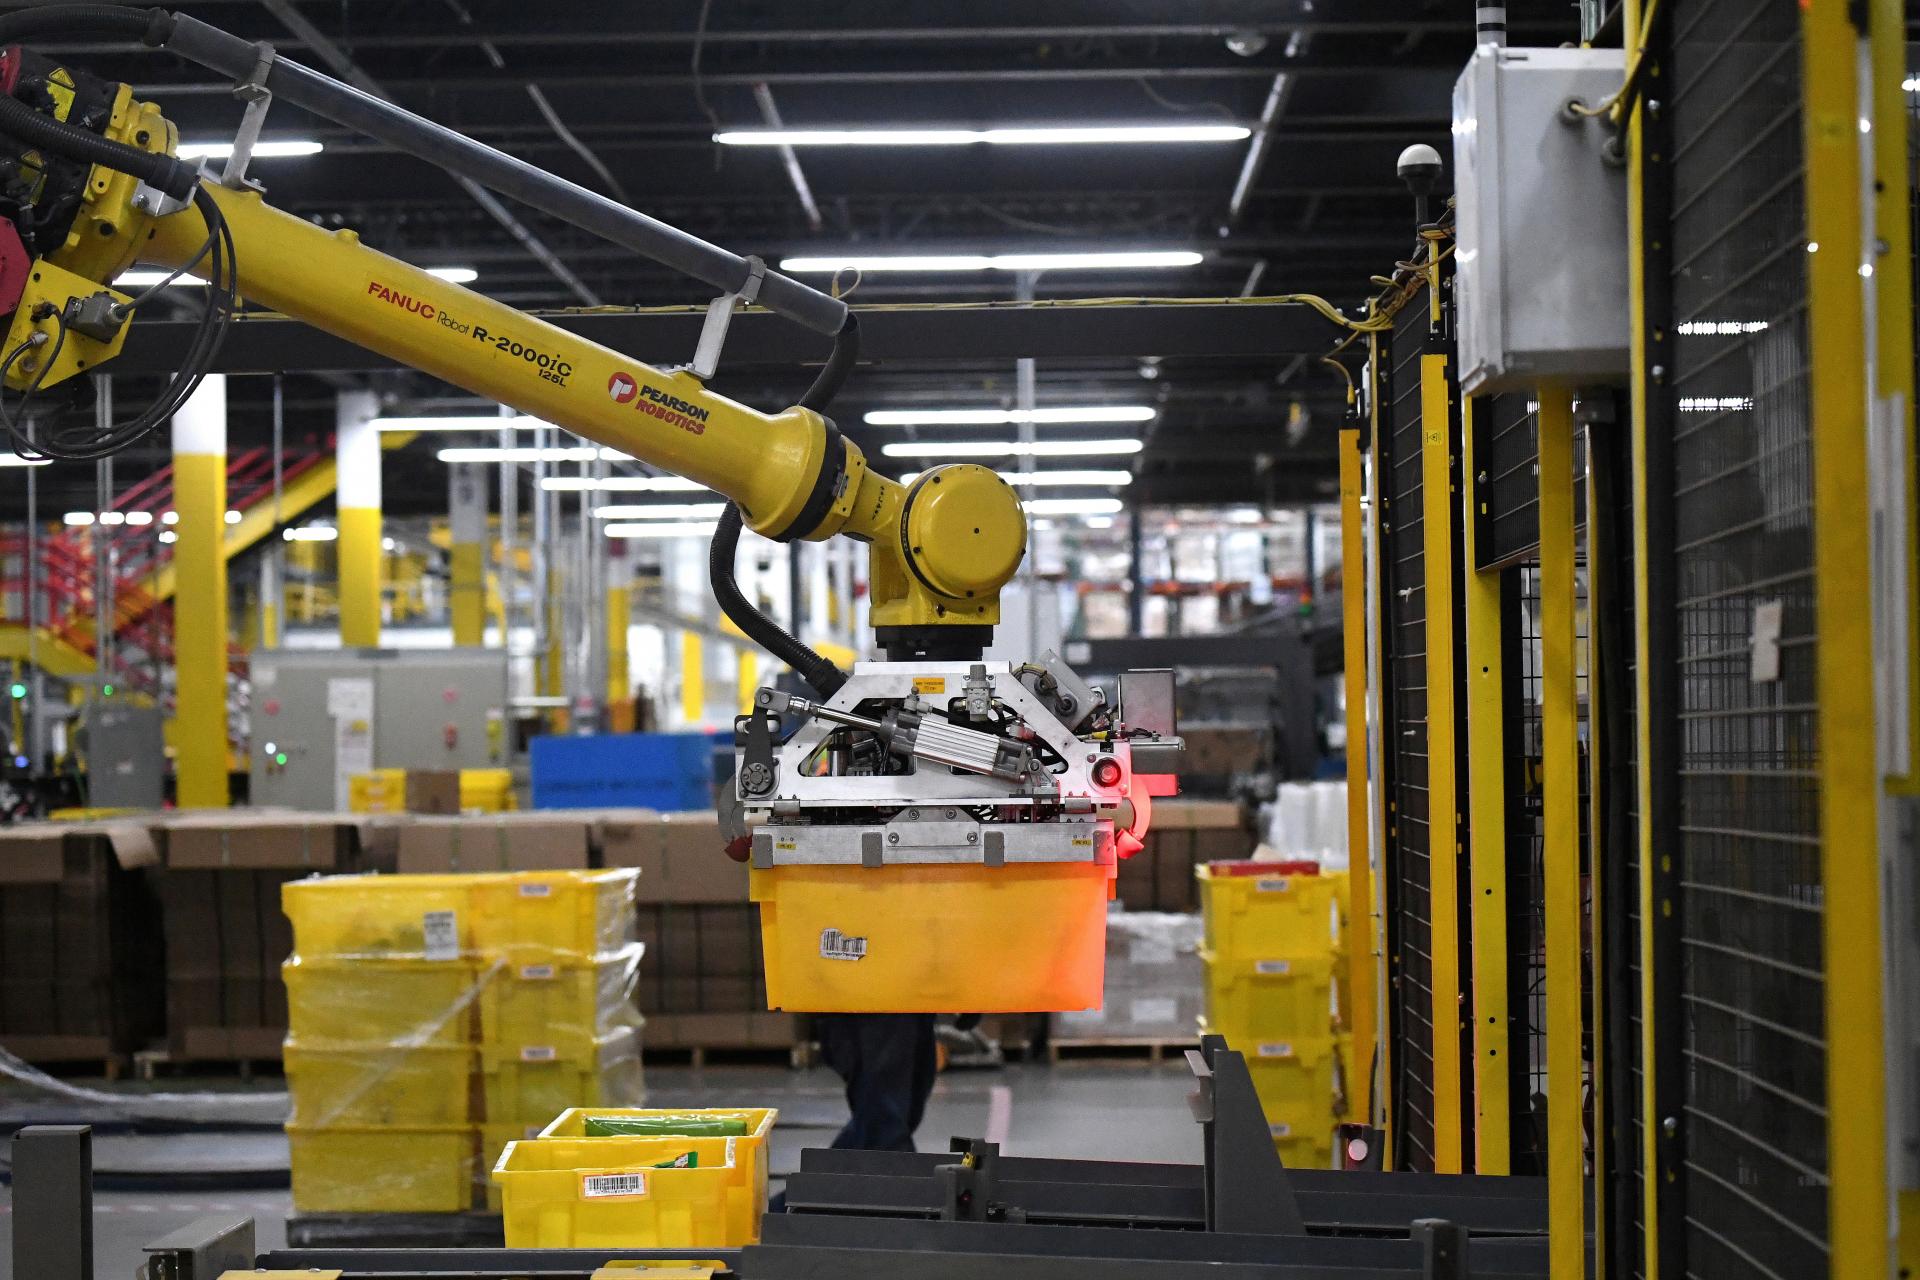 Že roboti kradnú prácu je mýtus, nové technológie zvyšujú význam úlohy ľudí, vraví manažér Amazonu